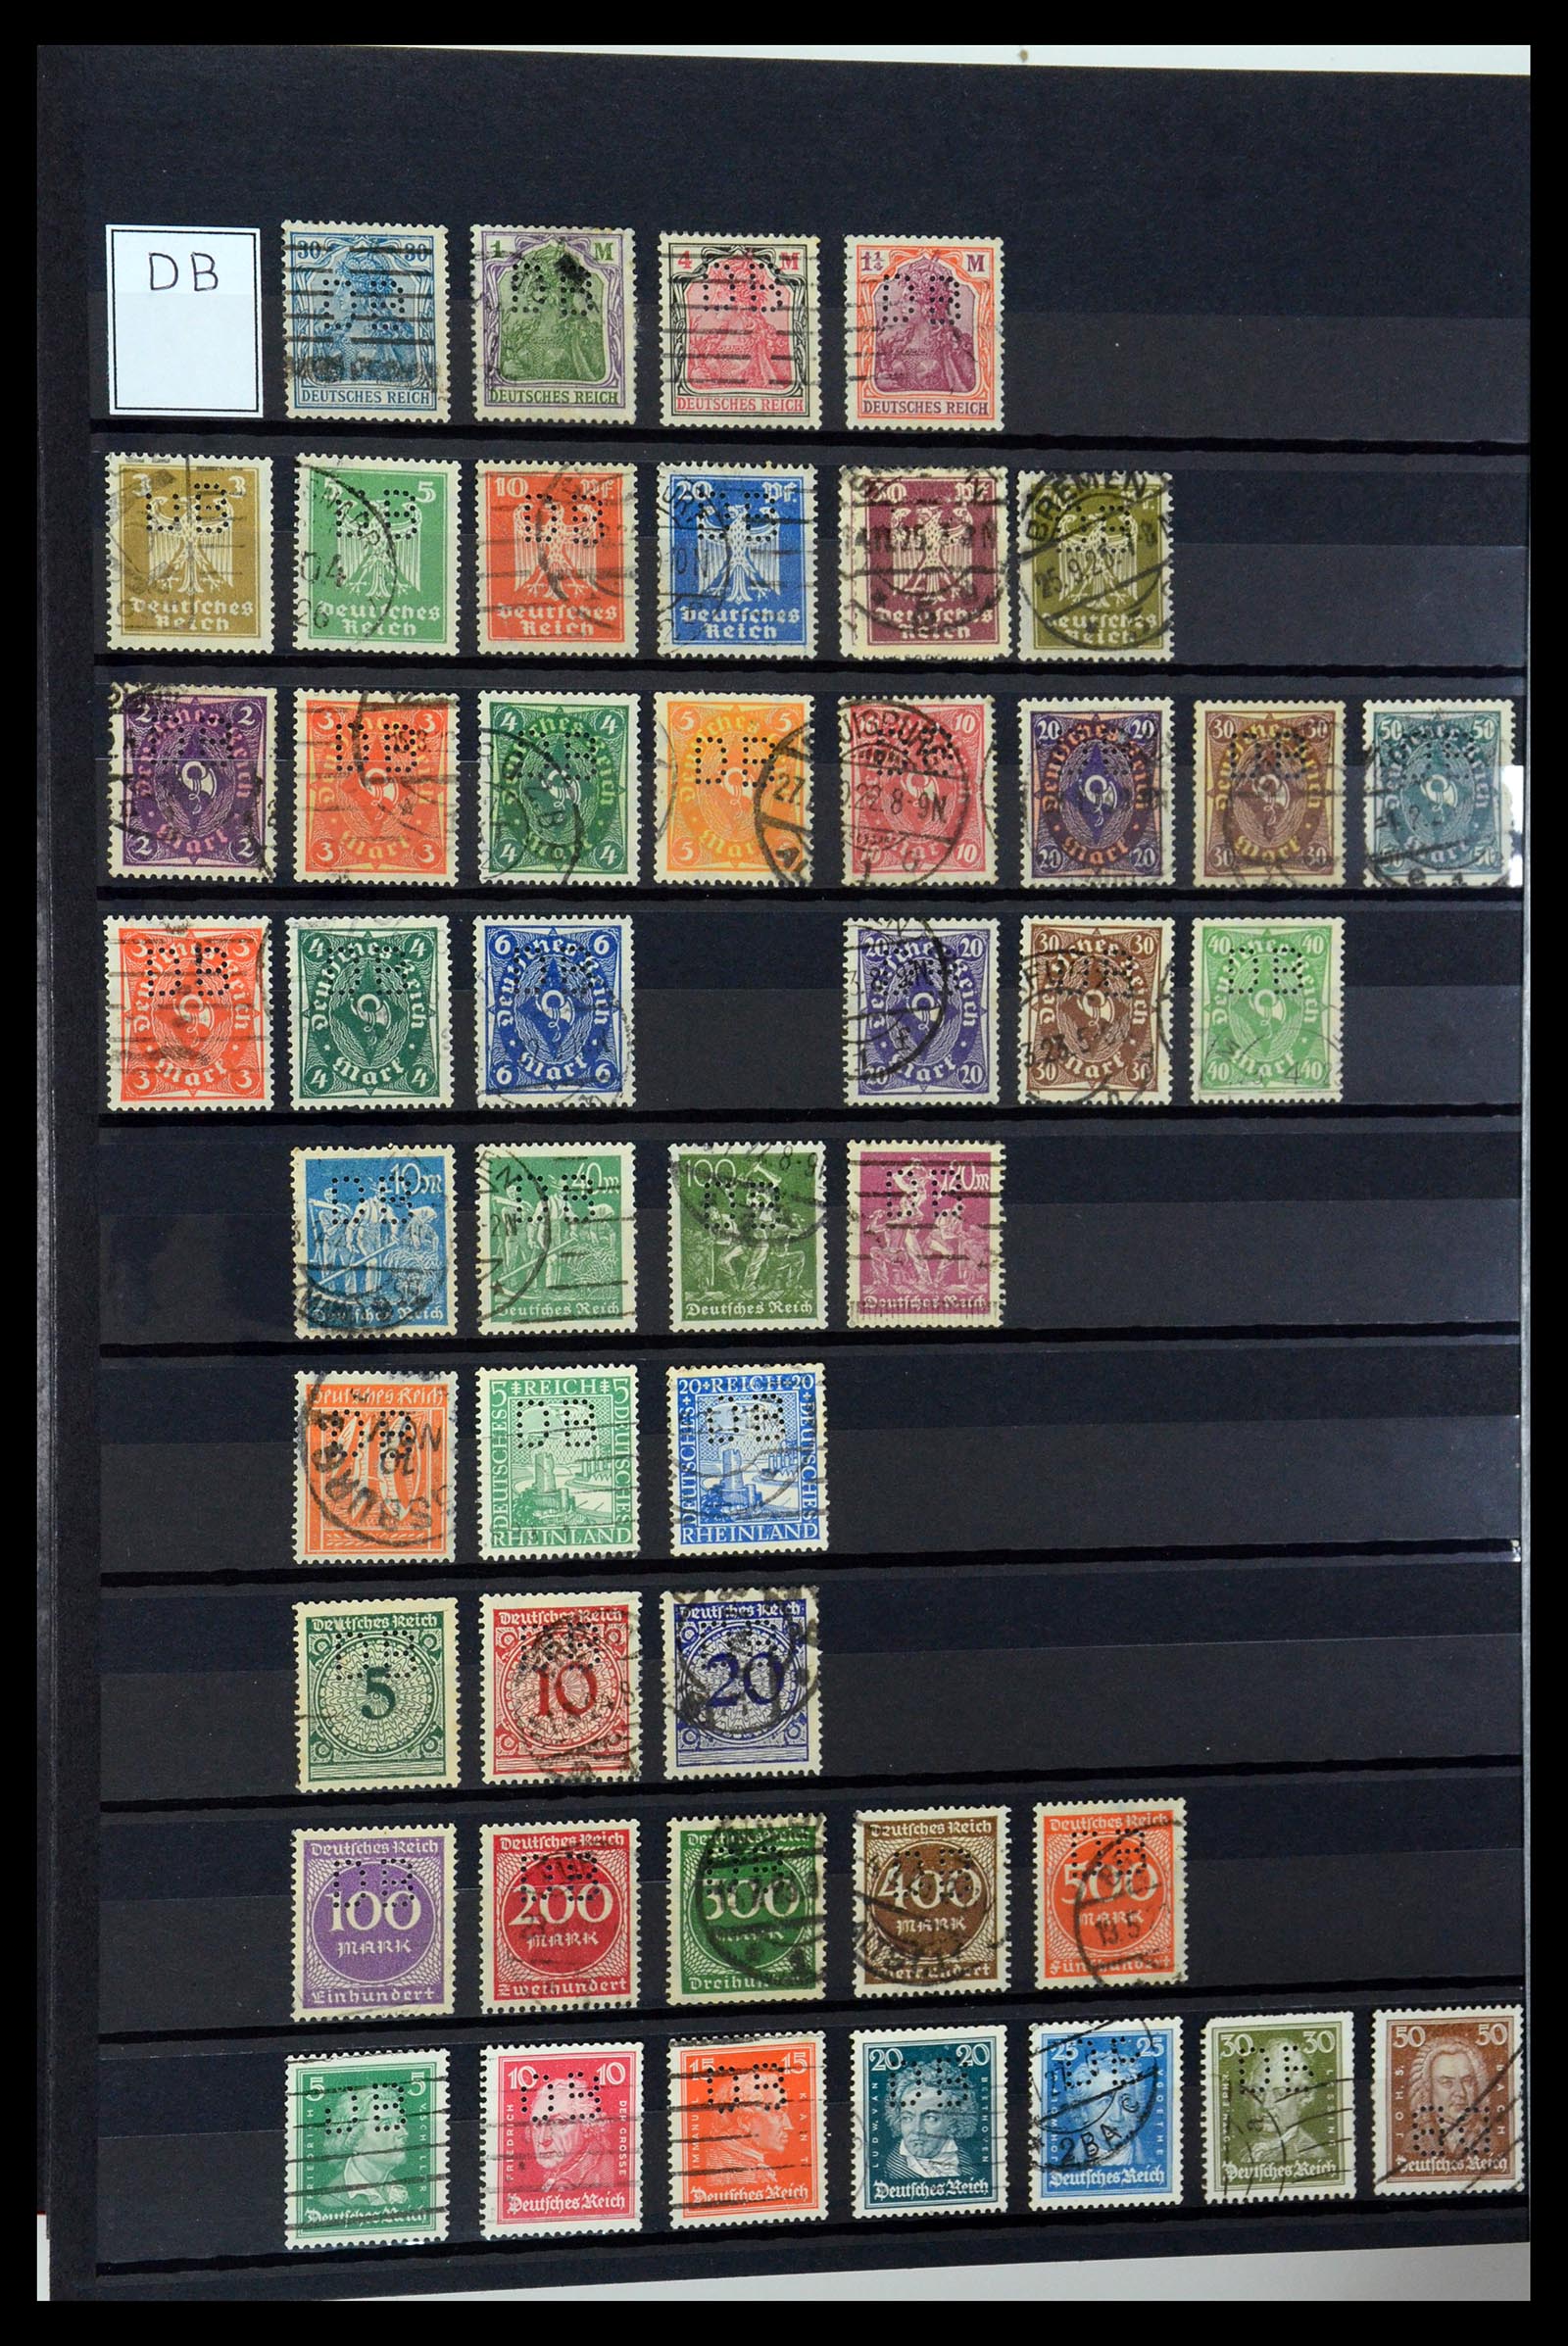 36405 090 - Stamp collection 36405 German Reich perfins 1880-1945.